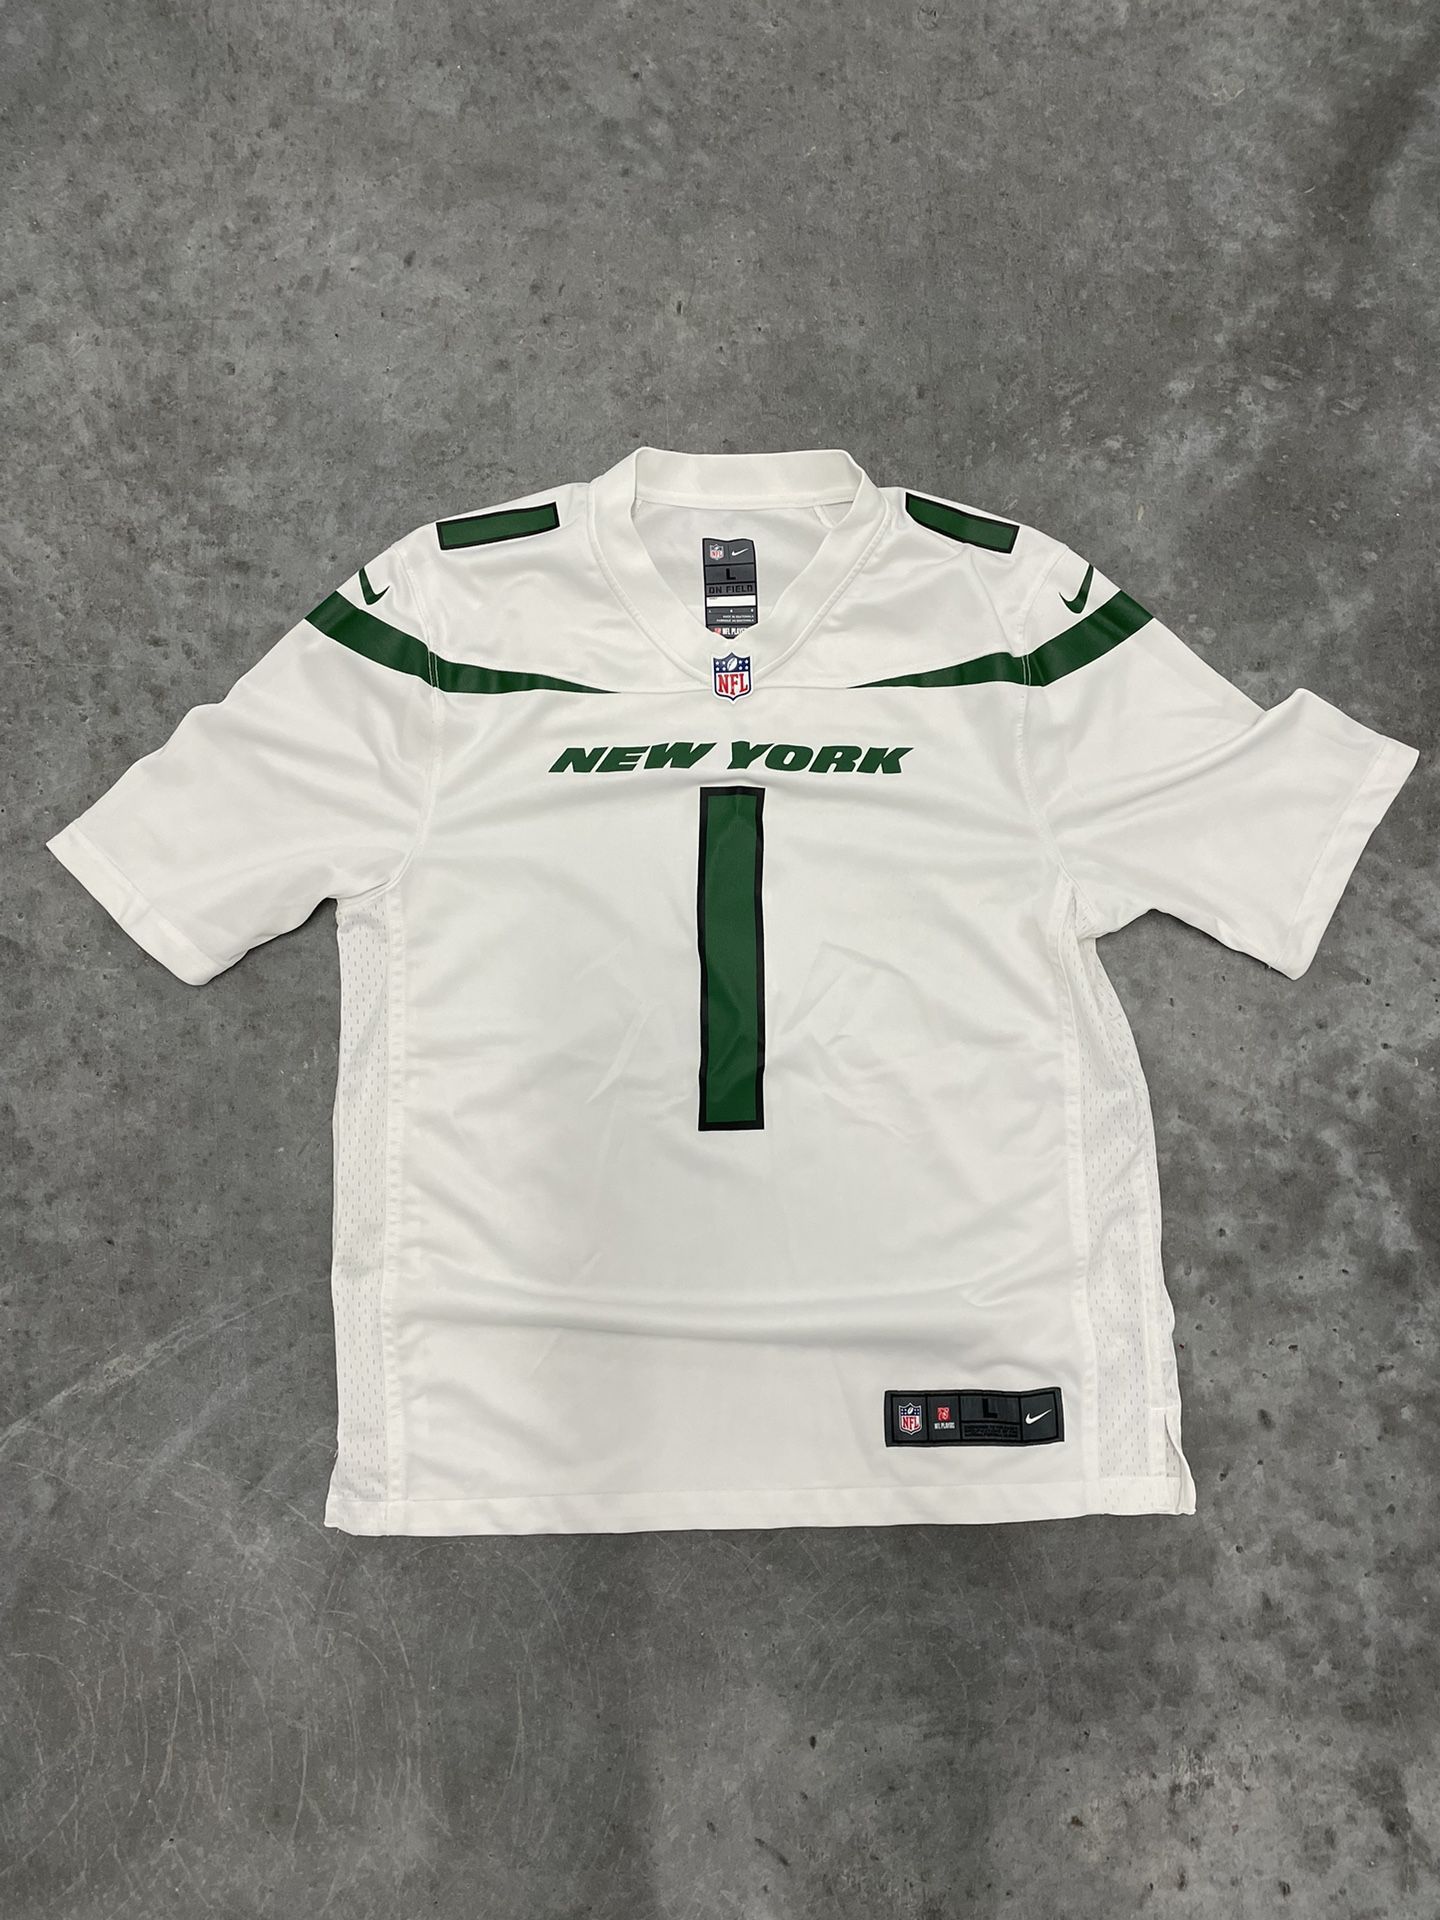 New York Jets Sauce Gardner Nike Jersey (White)